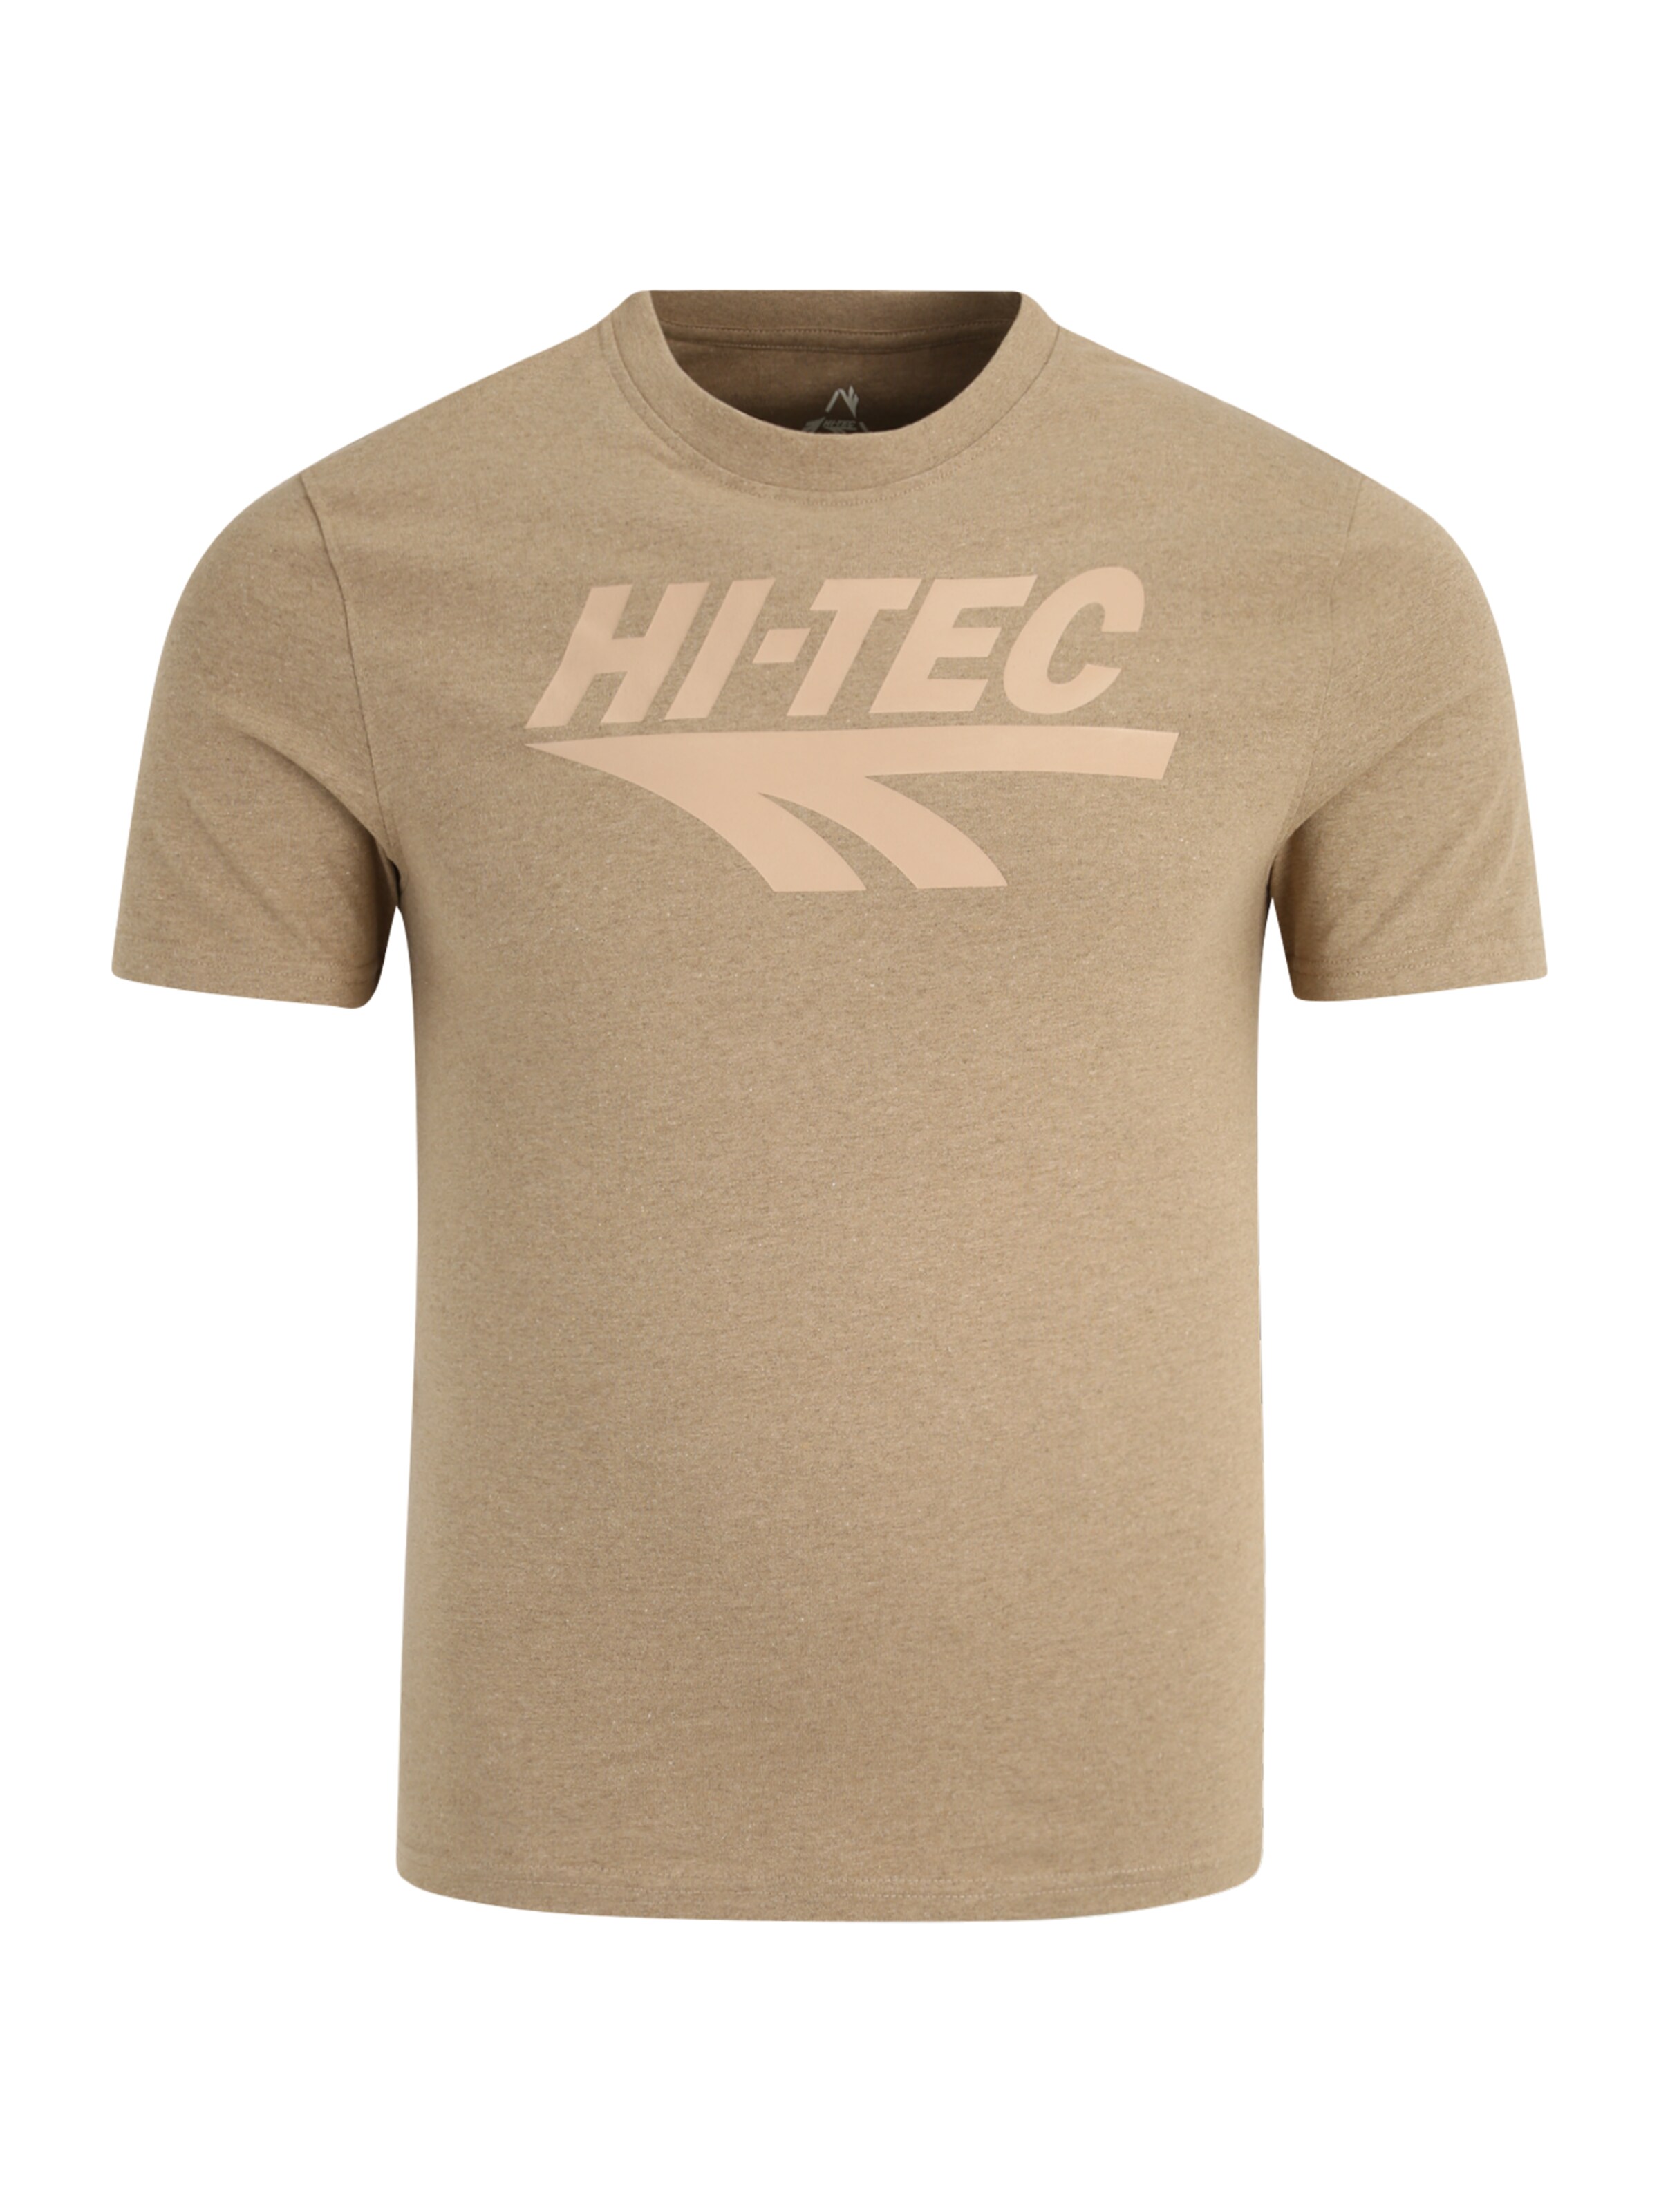 Men Sportswear | HI-TEC Performance Shirt in Beige, Light Beige - TL73371